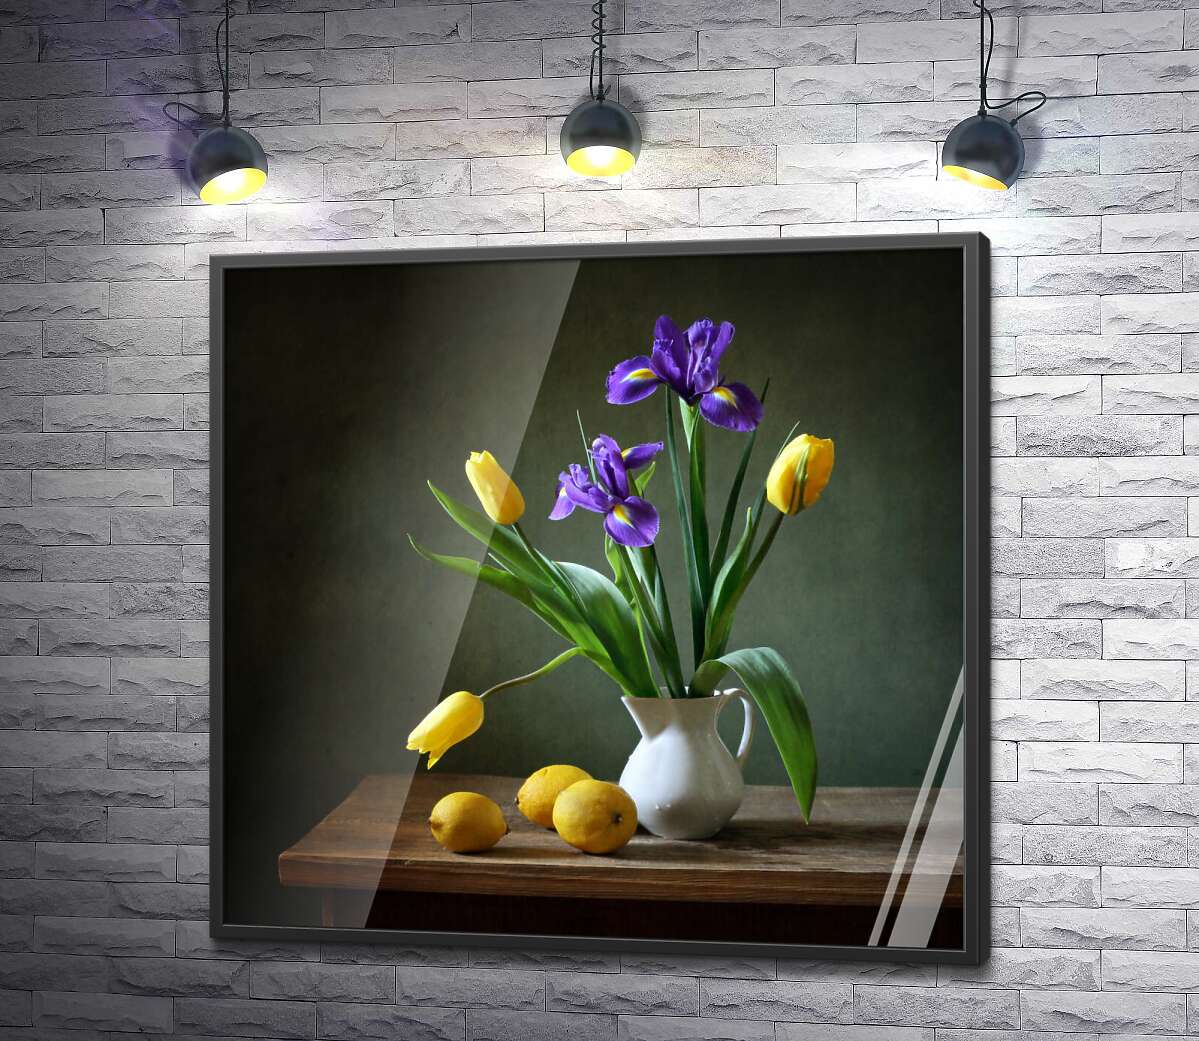 постер Весенняя свежесть ирисов и тюльпанов в вазе возле желтобоких лимонов